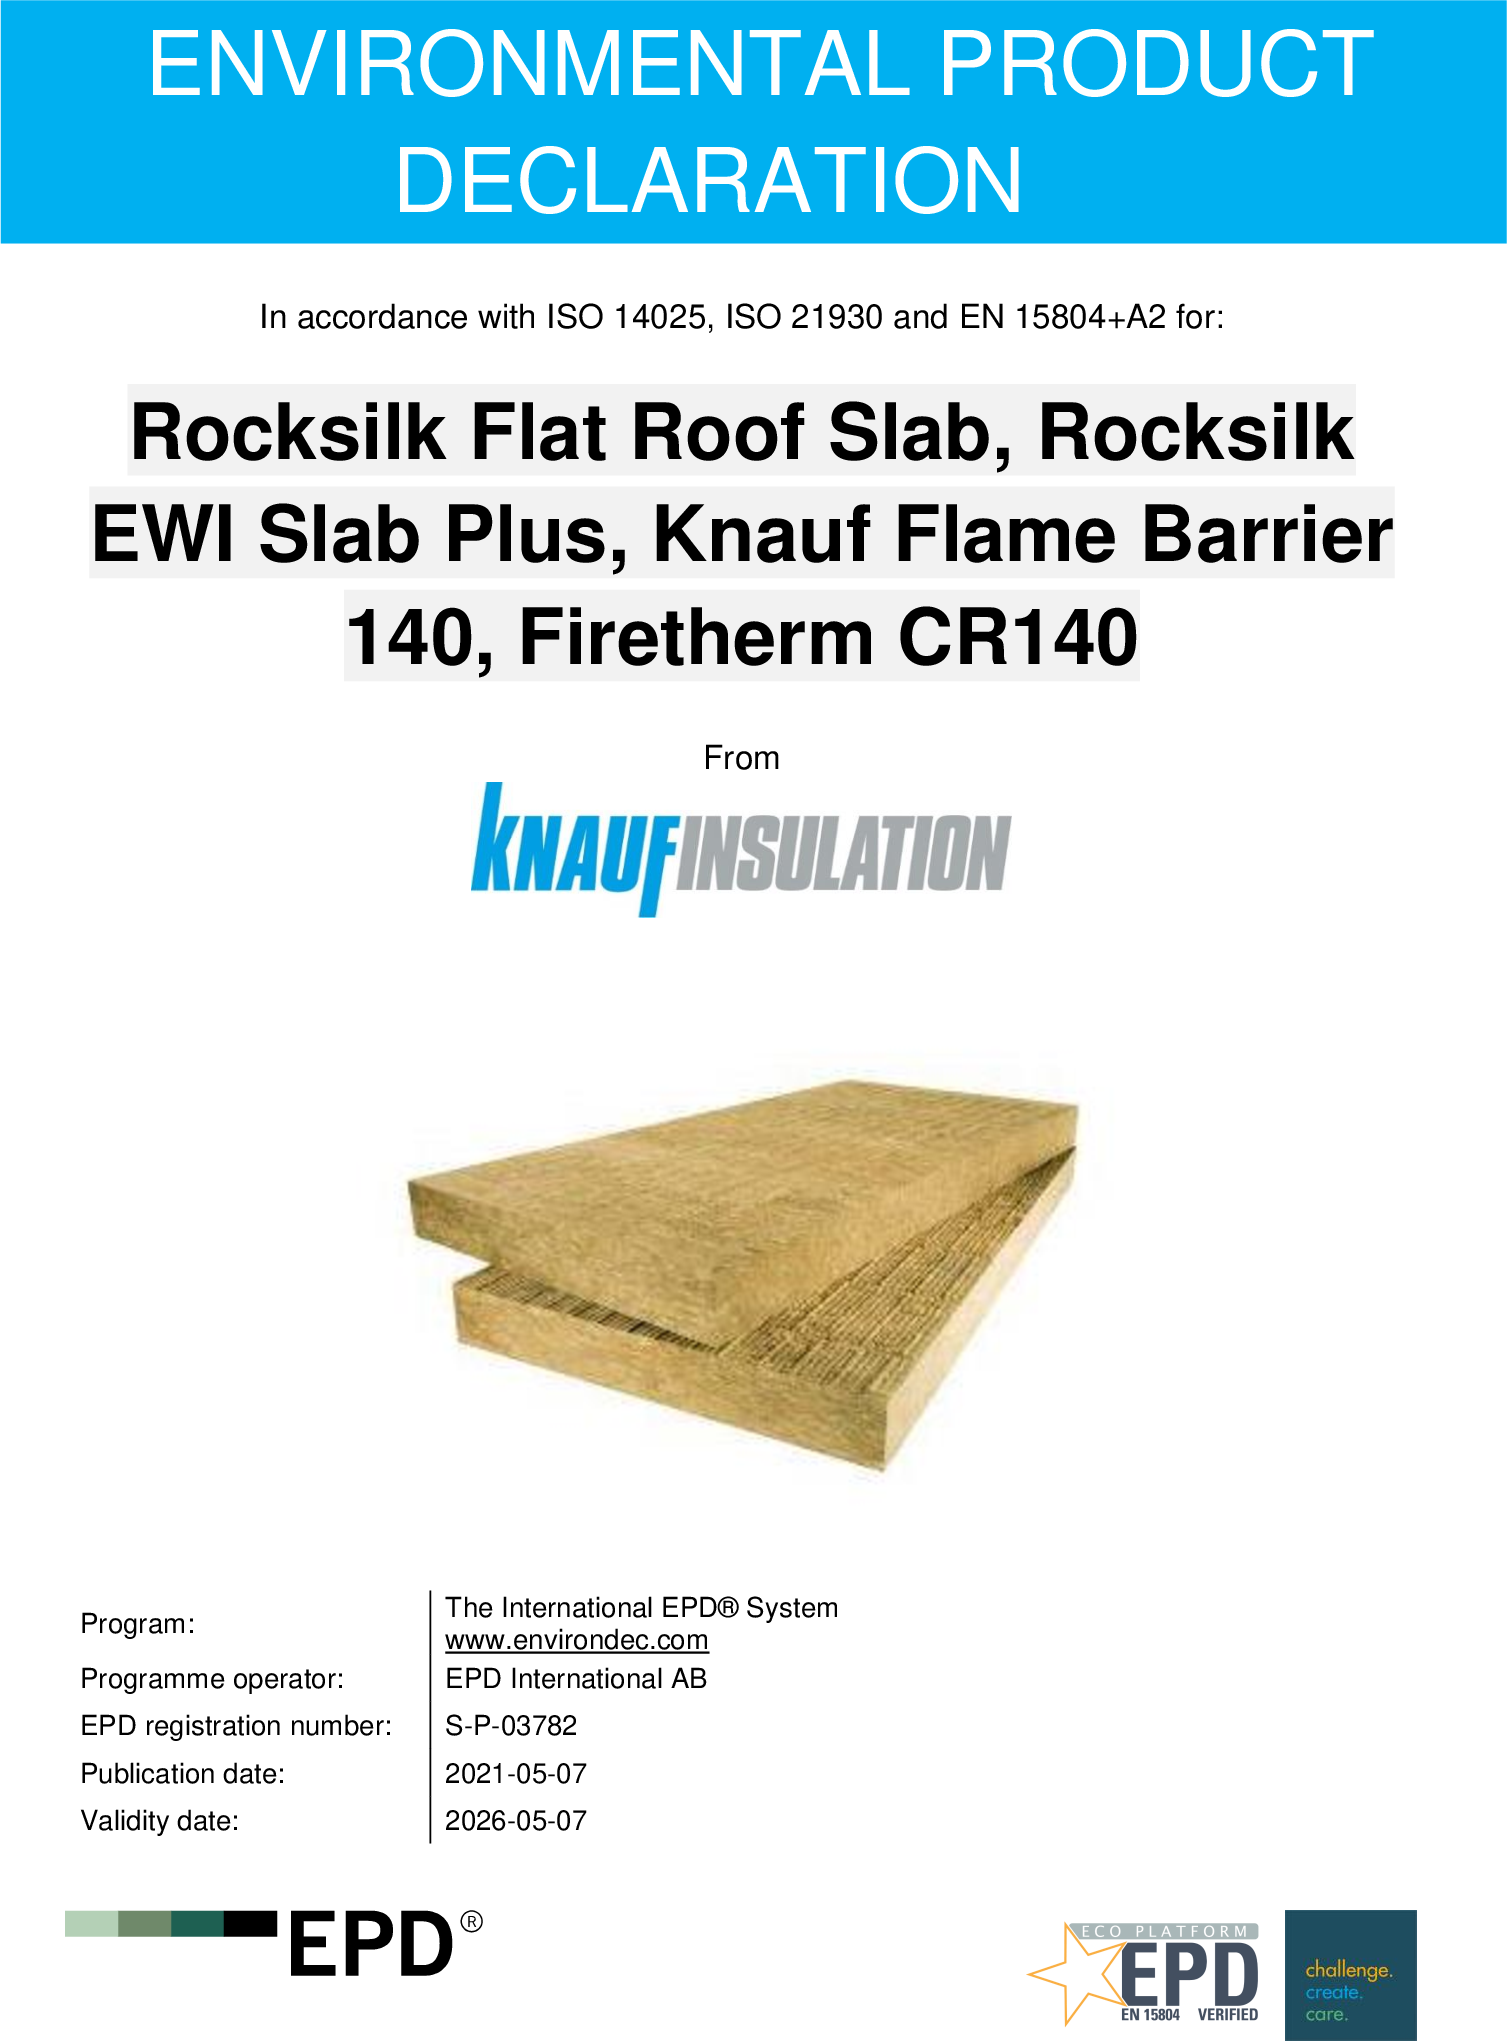 Rocksilk Flat Roof Slab, Rocksilk EWI Slab Plus, Knauf Flame Barrier, 140, Firetherm CR140